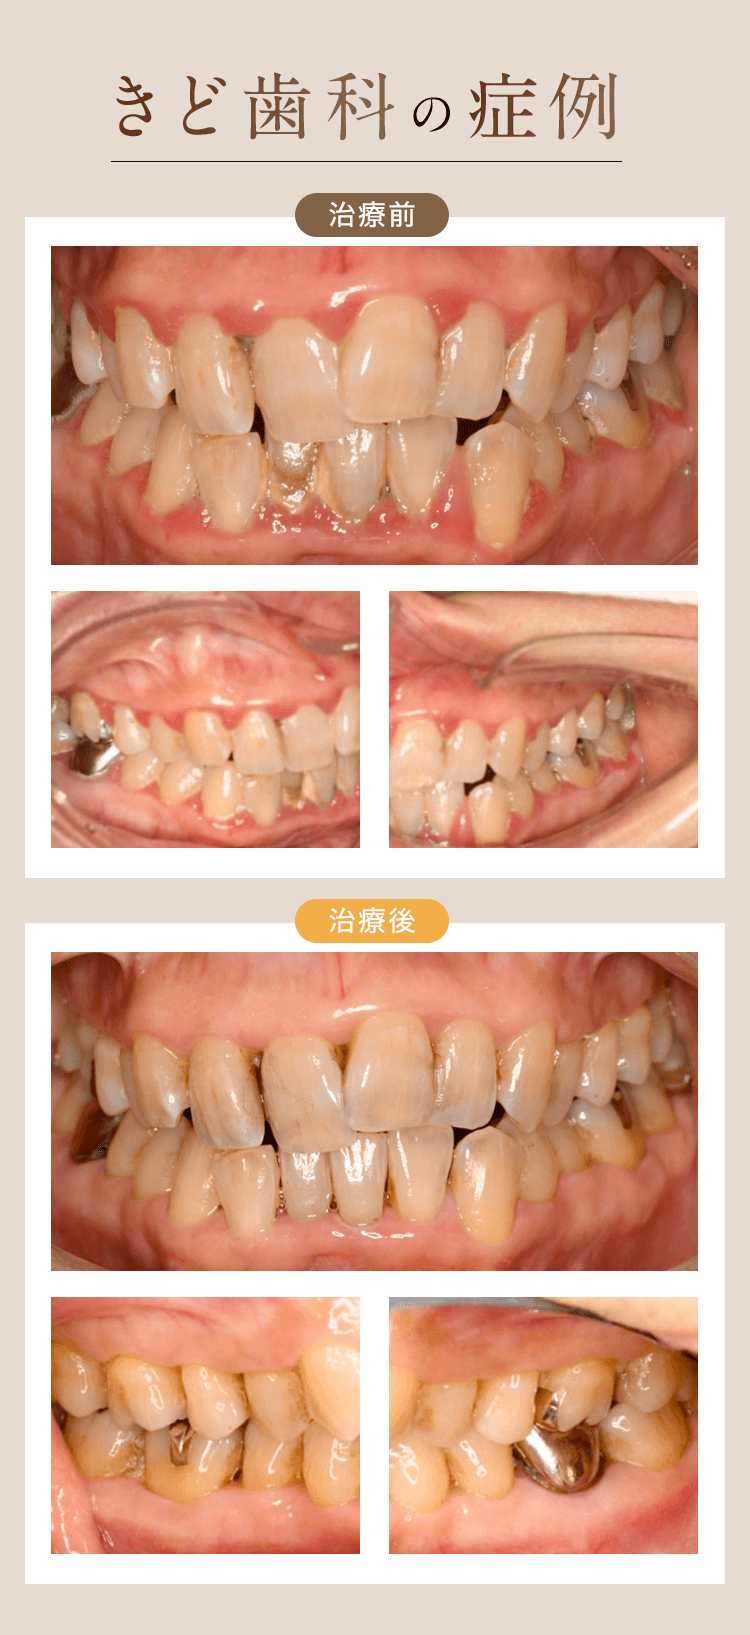 きど歯科の症例